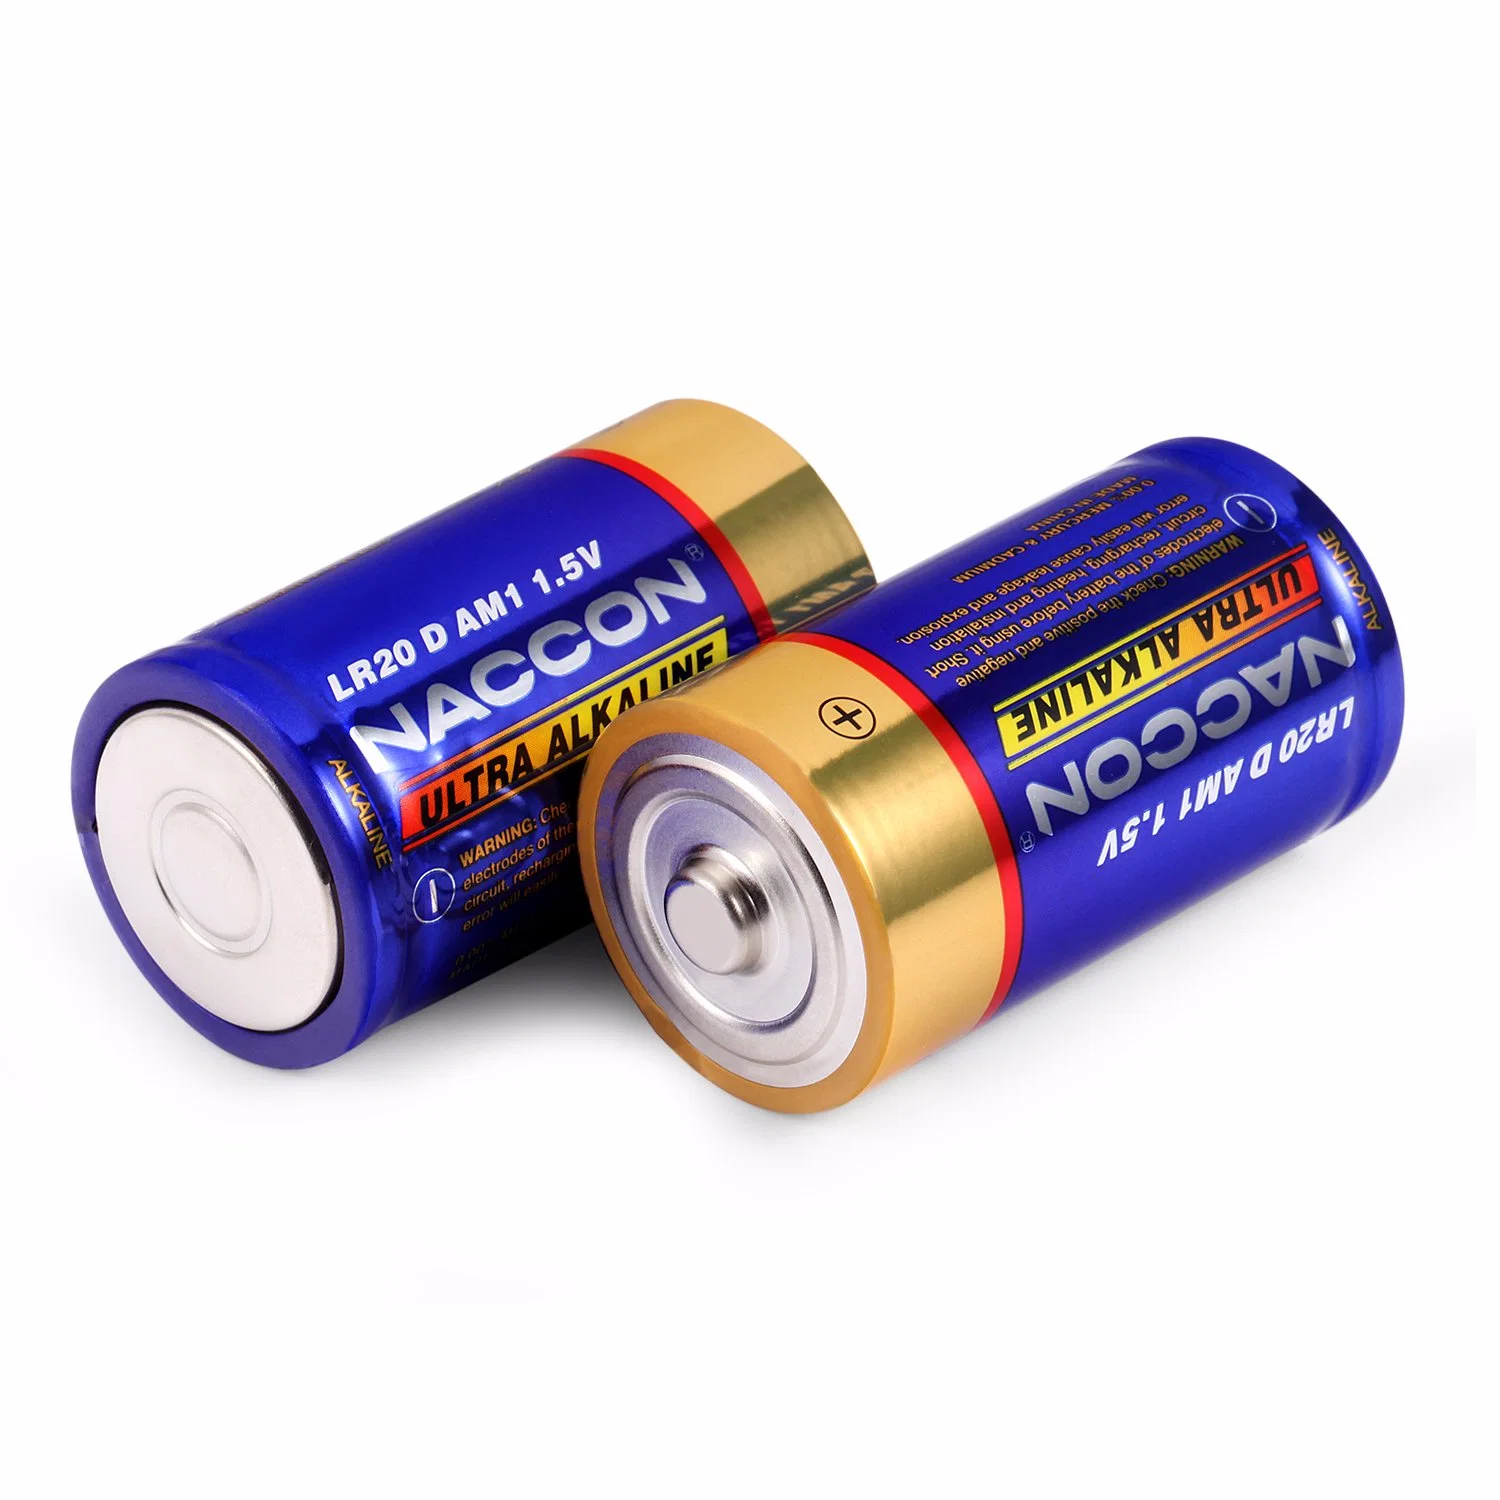 Alkaline-Batterie D, Größe LR20 1,5V, primäre Trockenbatterie